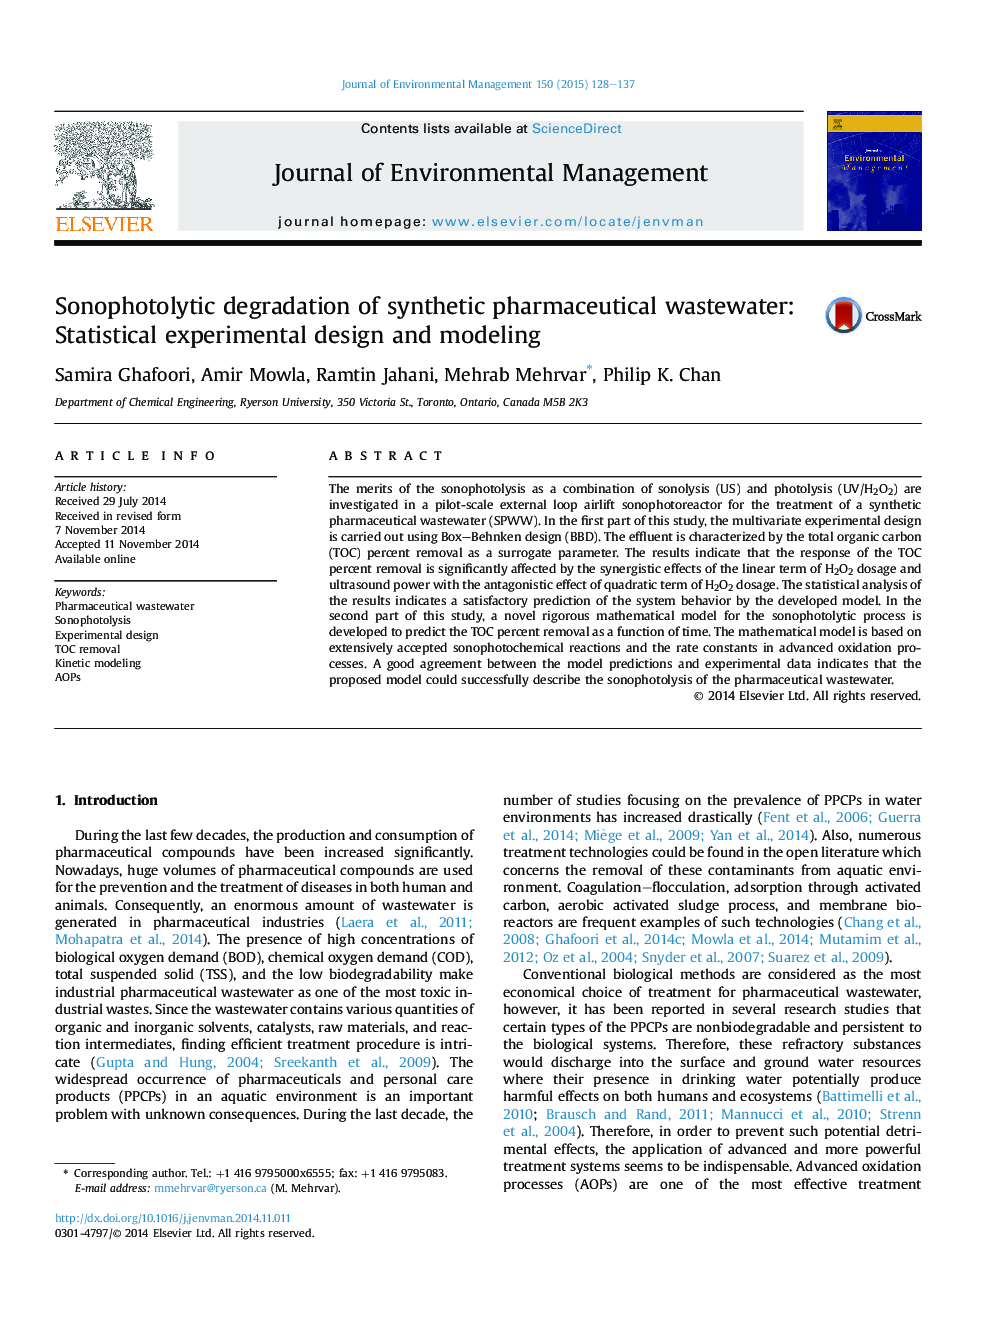 تخریب سونفوتولیتیک فاضلاب مصنوعی دارویی: طراحی و مدلسازی آماری آزمایشگاهی 